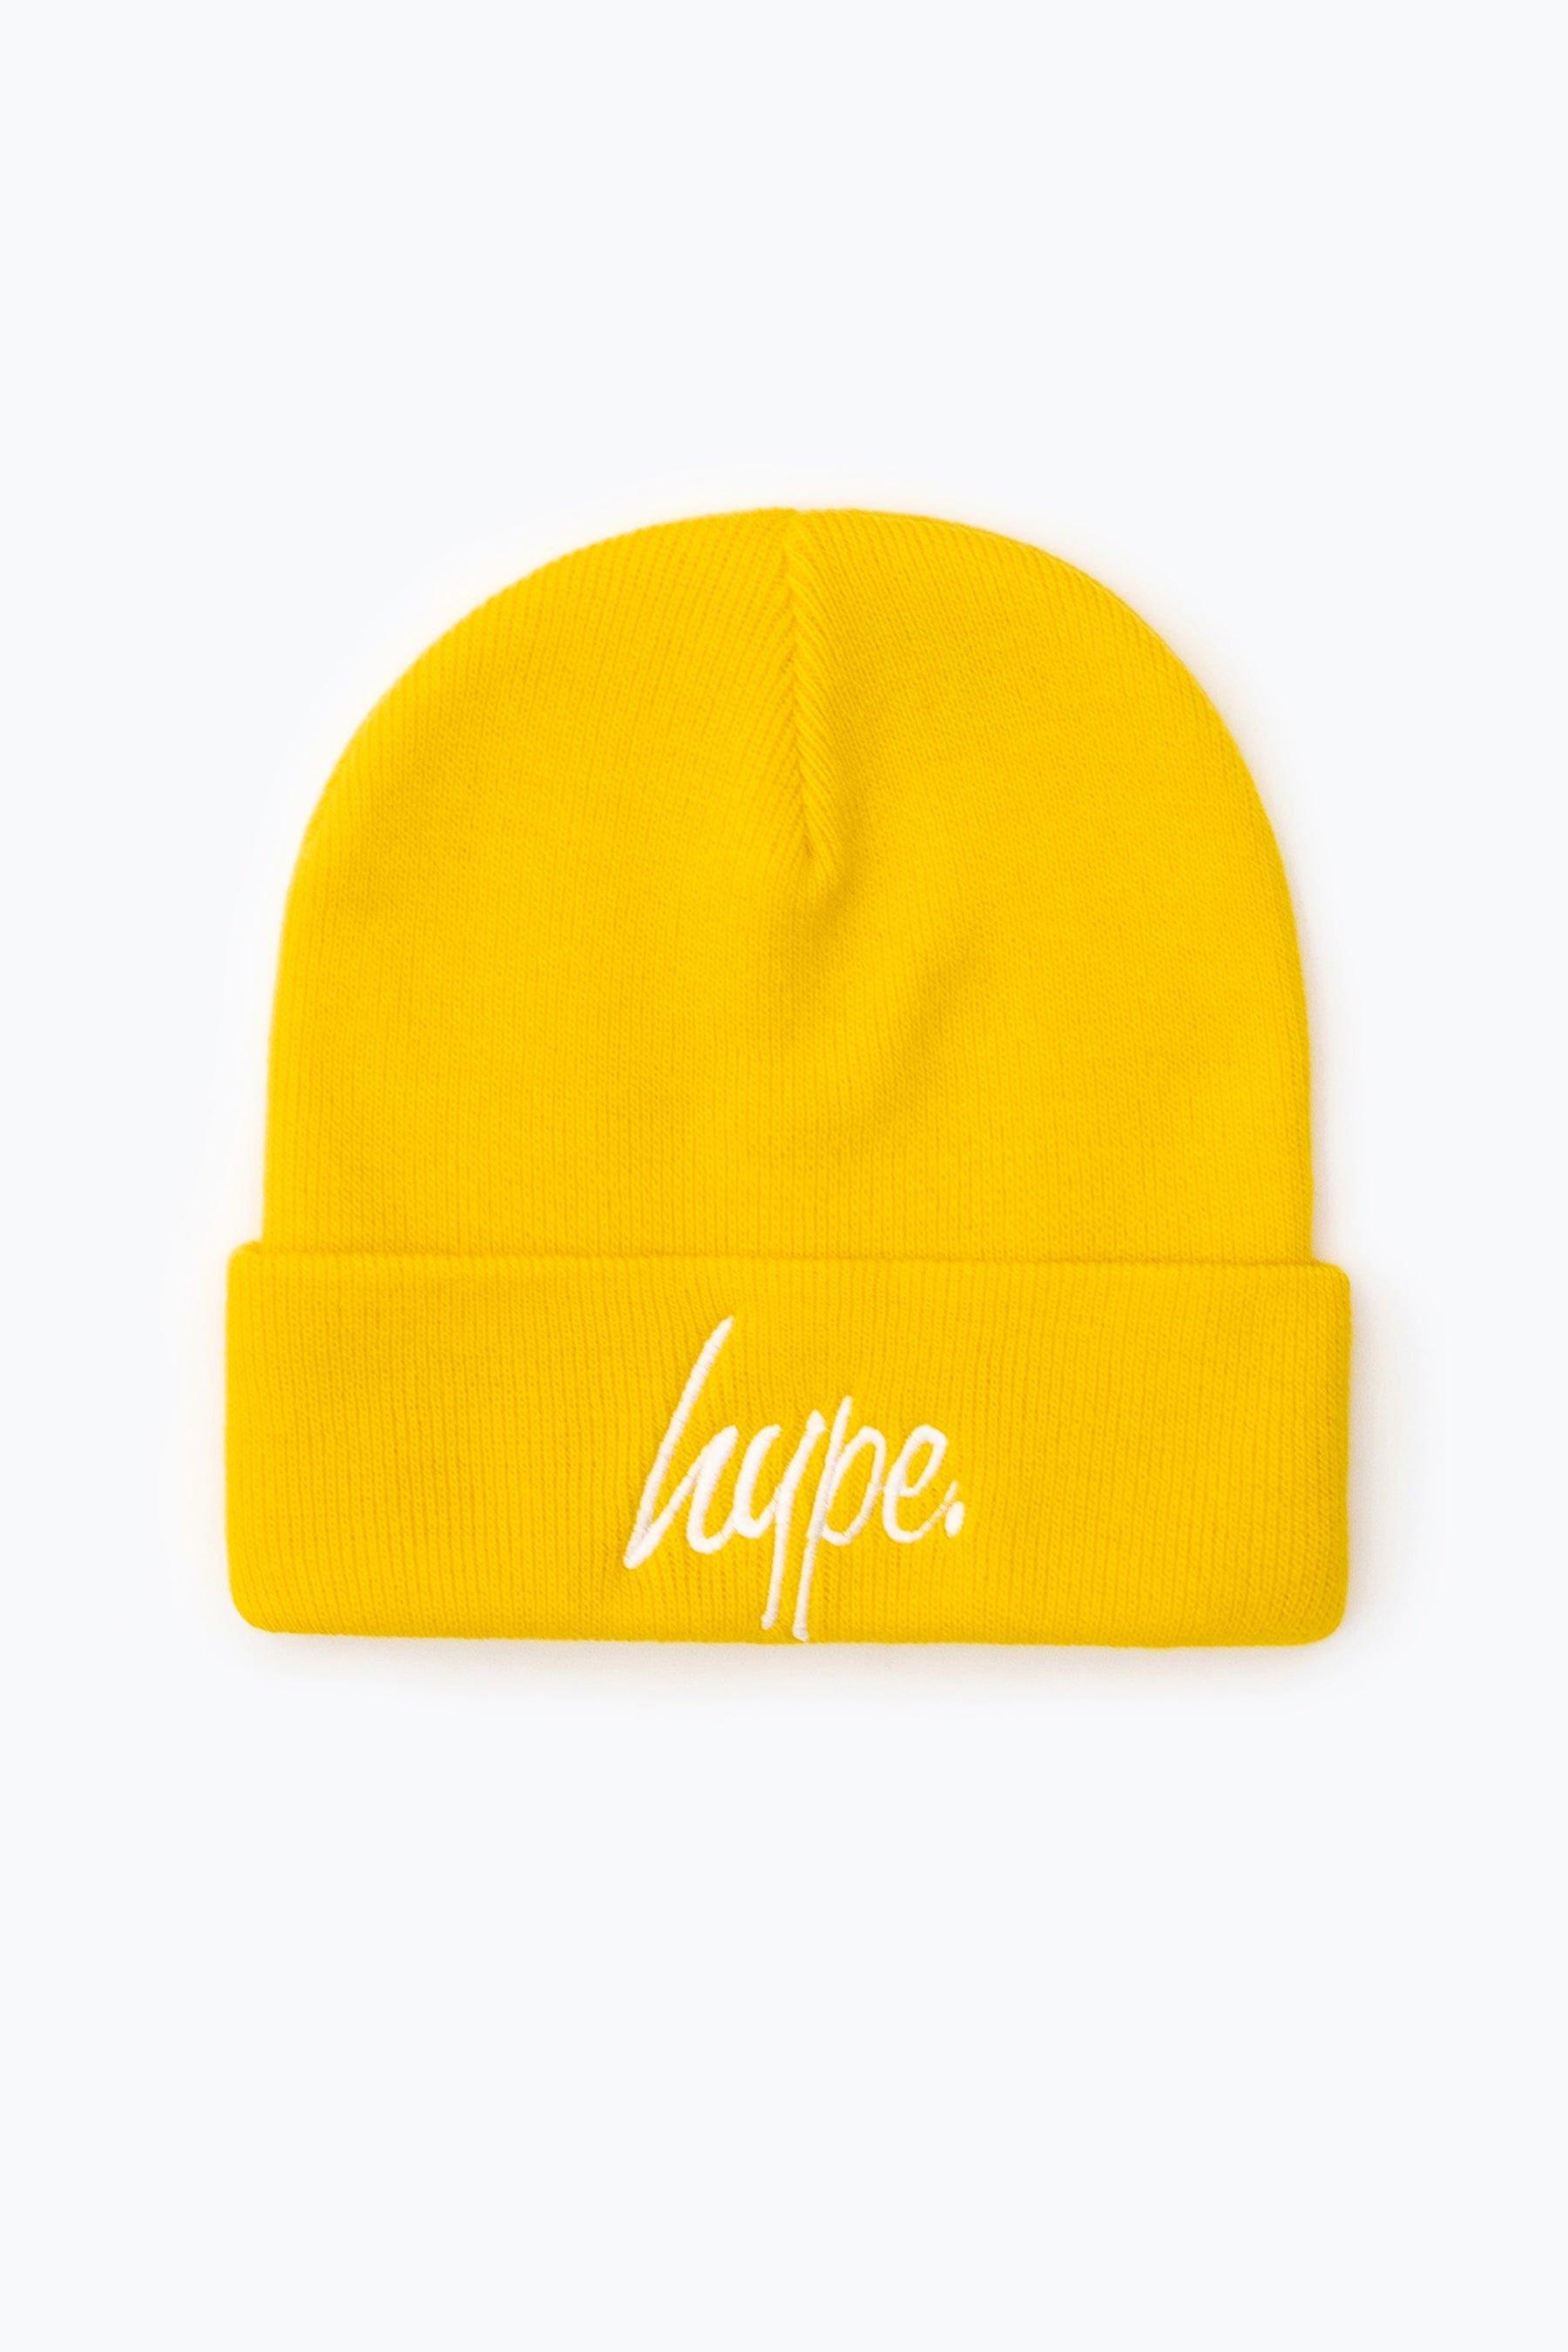 Желтая шапка с надписью Hype, желтый